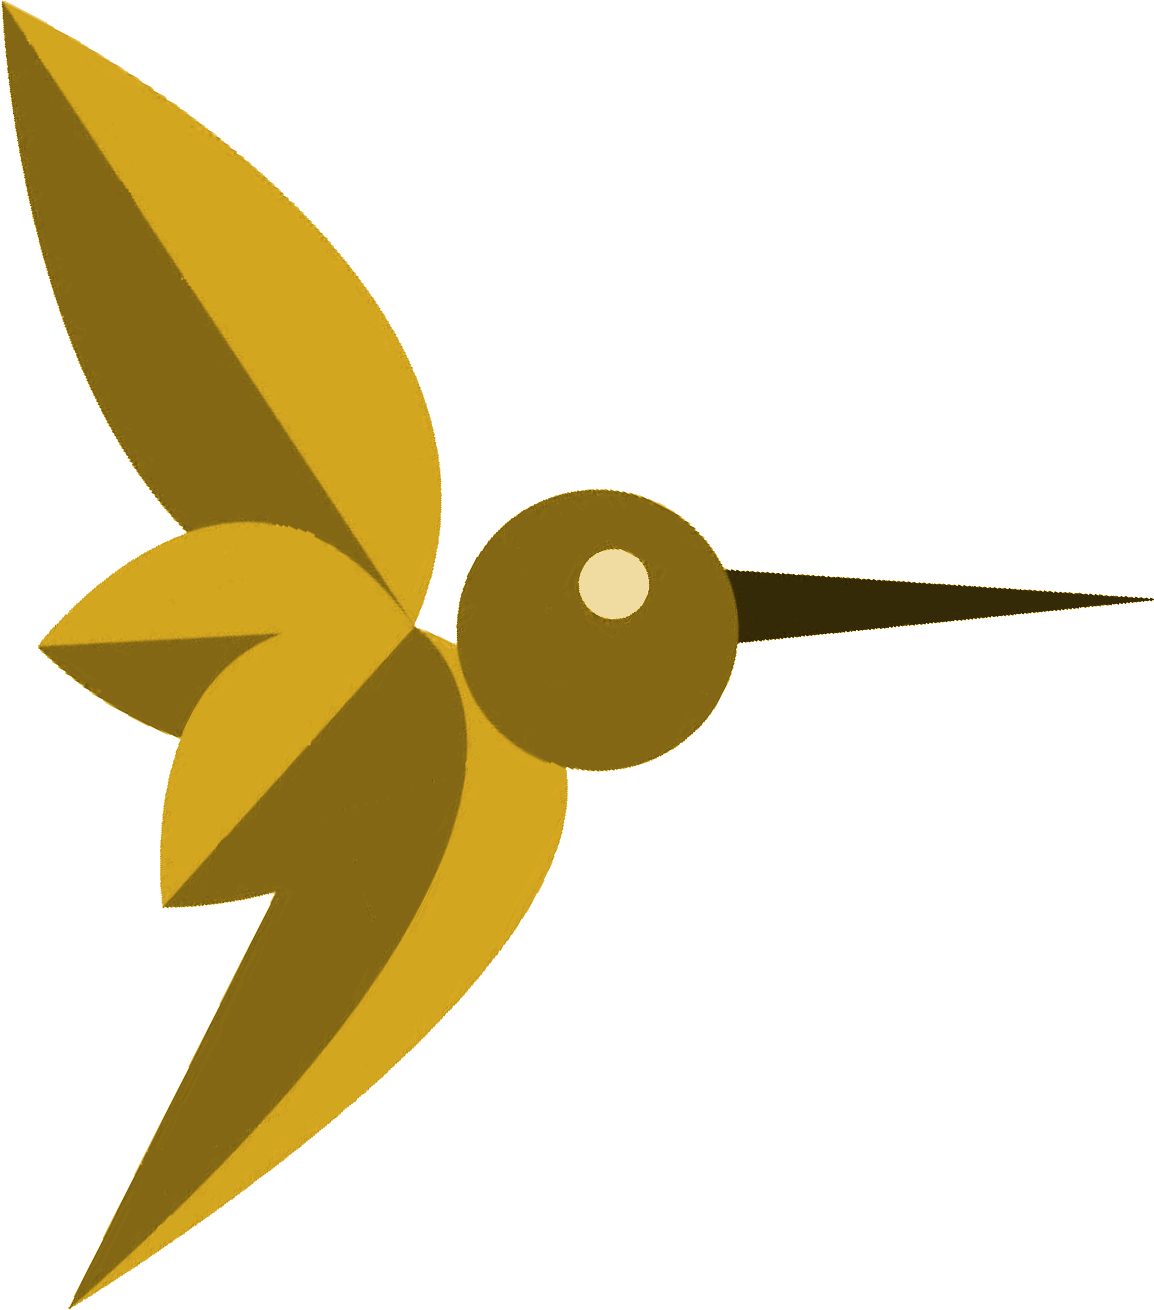 Logo Colibri